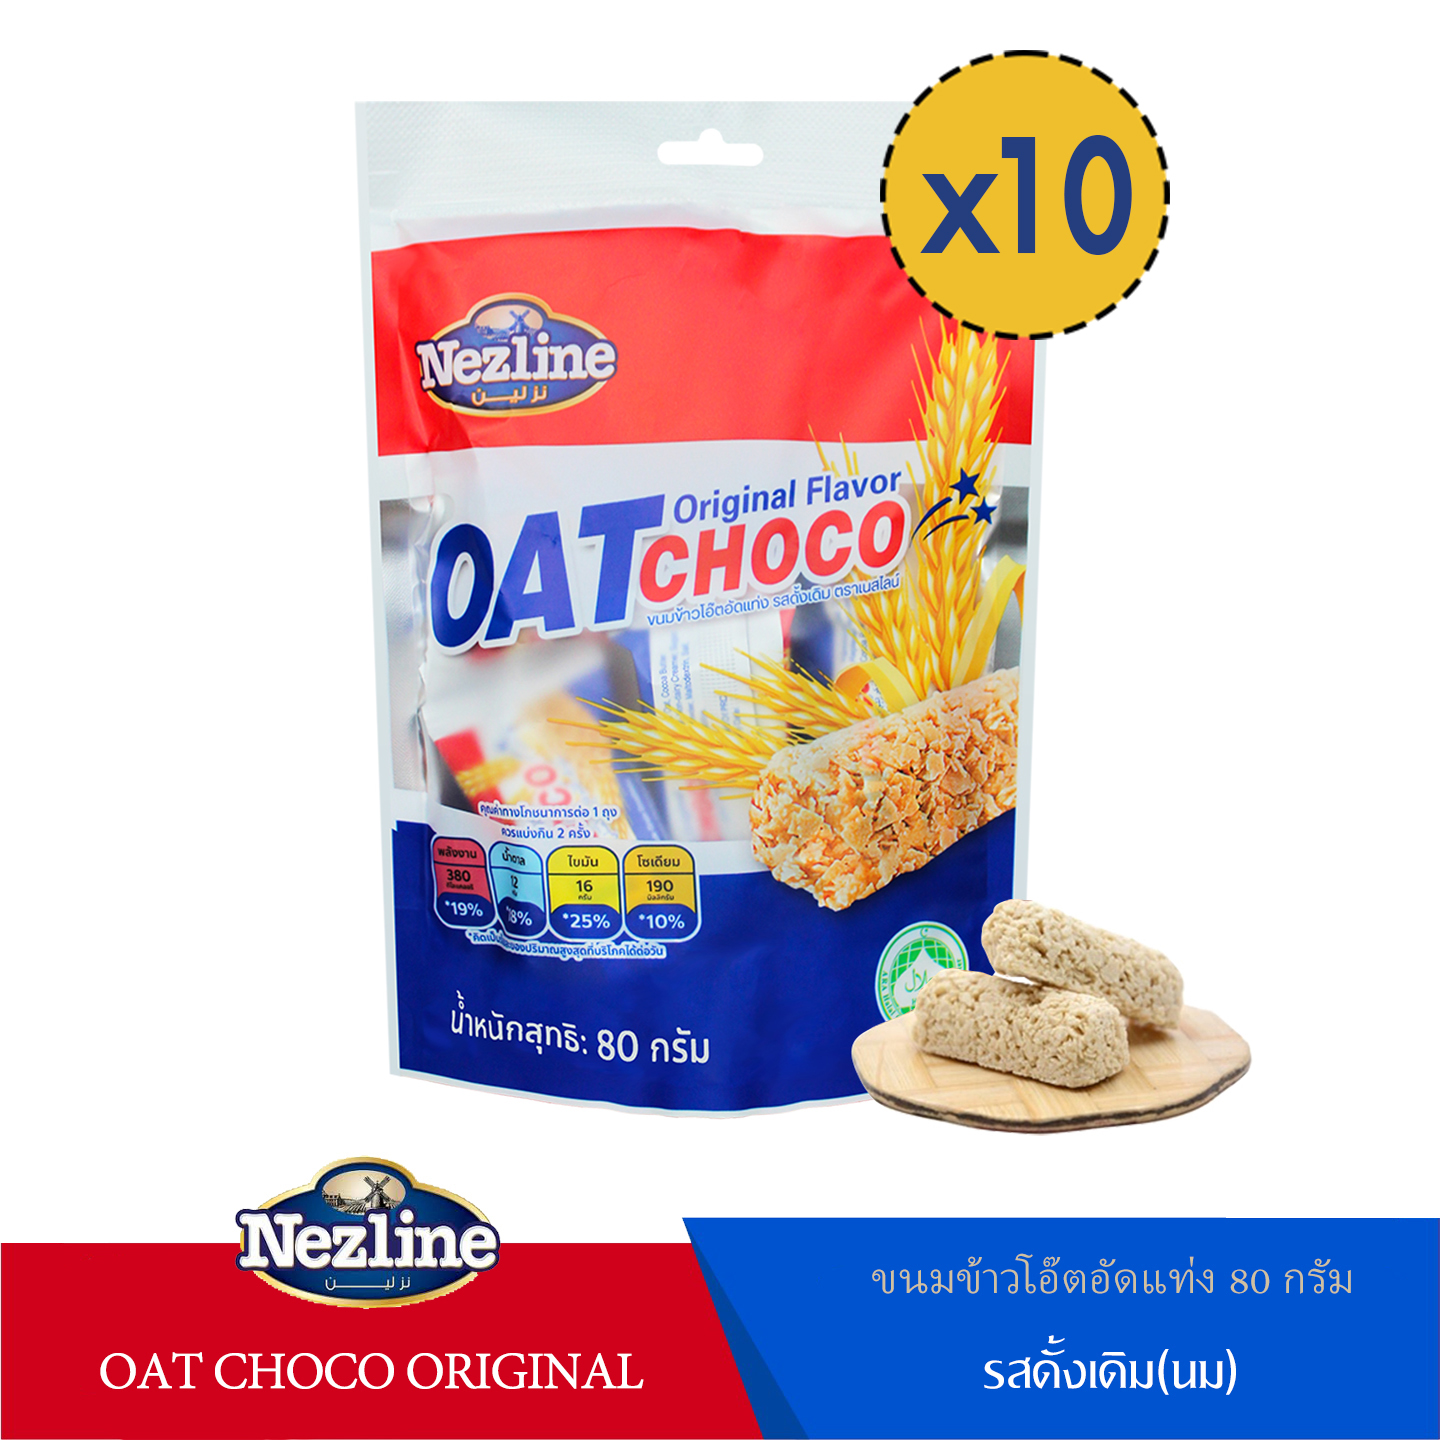 (10 แพ็คเล็ก) ขนมข้าวโอ๊ตอัดแท่ง รสดั้งเดิม ตราเนสไลน์ 80 กรัม (Oat choco Original flavor Nezline brand)